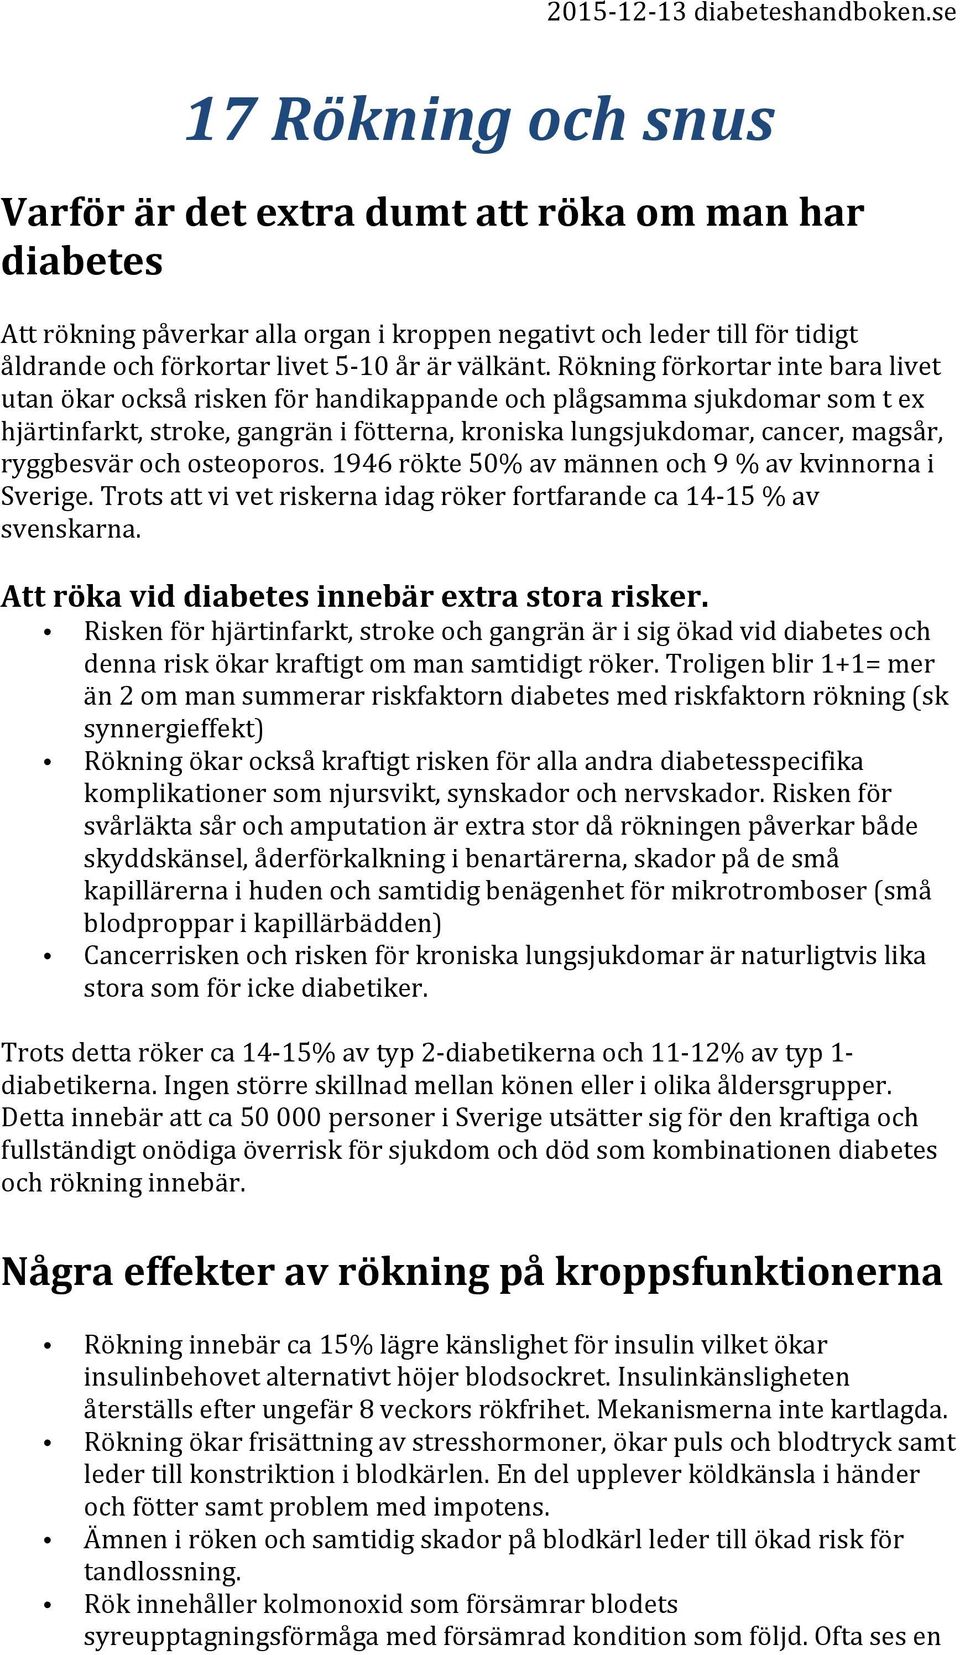 ryggbesvär och osteoporos. 1946 rökte 50% av männen och 9 % av kvinnorna i Sverige. Trots att vi vet riskerna idag röker fortfarande ca 14-15 % av svenskarna.